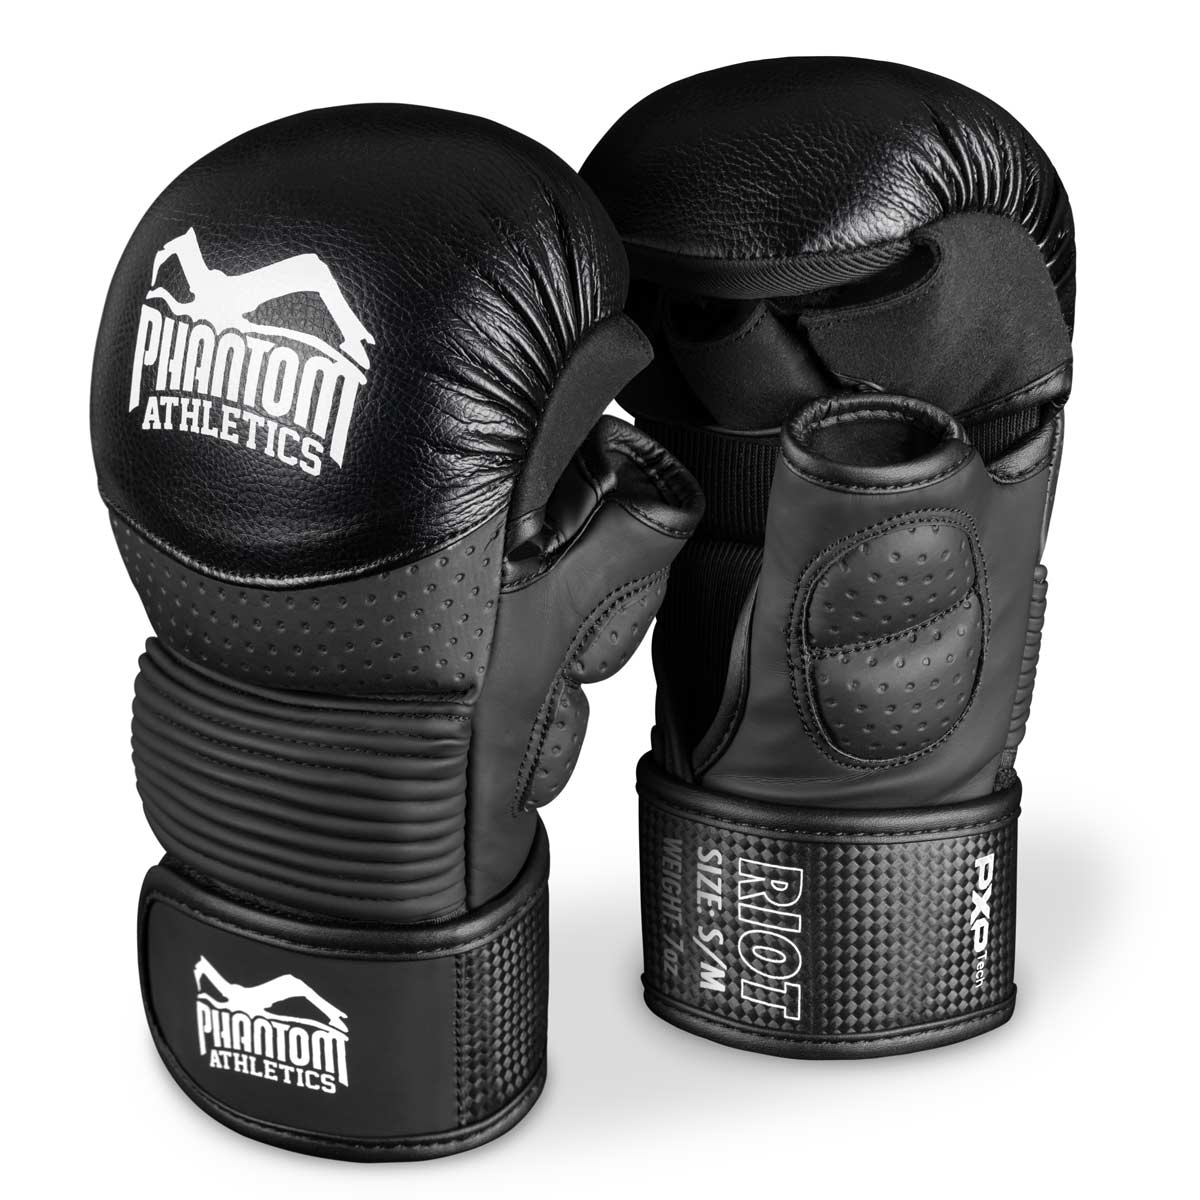 Phantom RIOT PRO MMA sparinga cimdi. Ideāli piemērots jūsu cīņas mākslas treniņiem un amatieru sacensībām. Augstākās kvalitātes un drošākie MMA cimdi tirgū. Lieliski piemērots un izcila kvalitāte treniņiem un sparingiem.